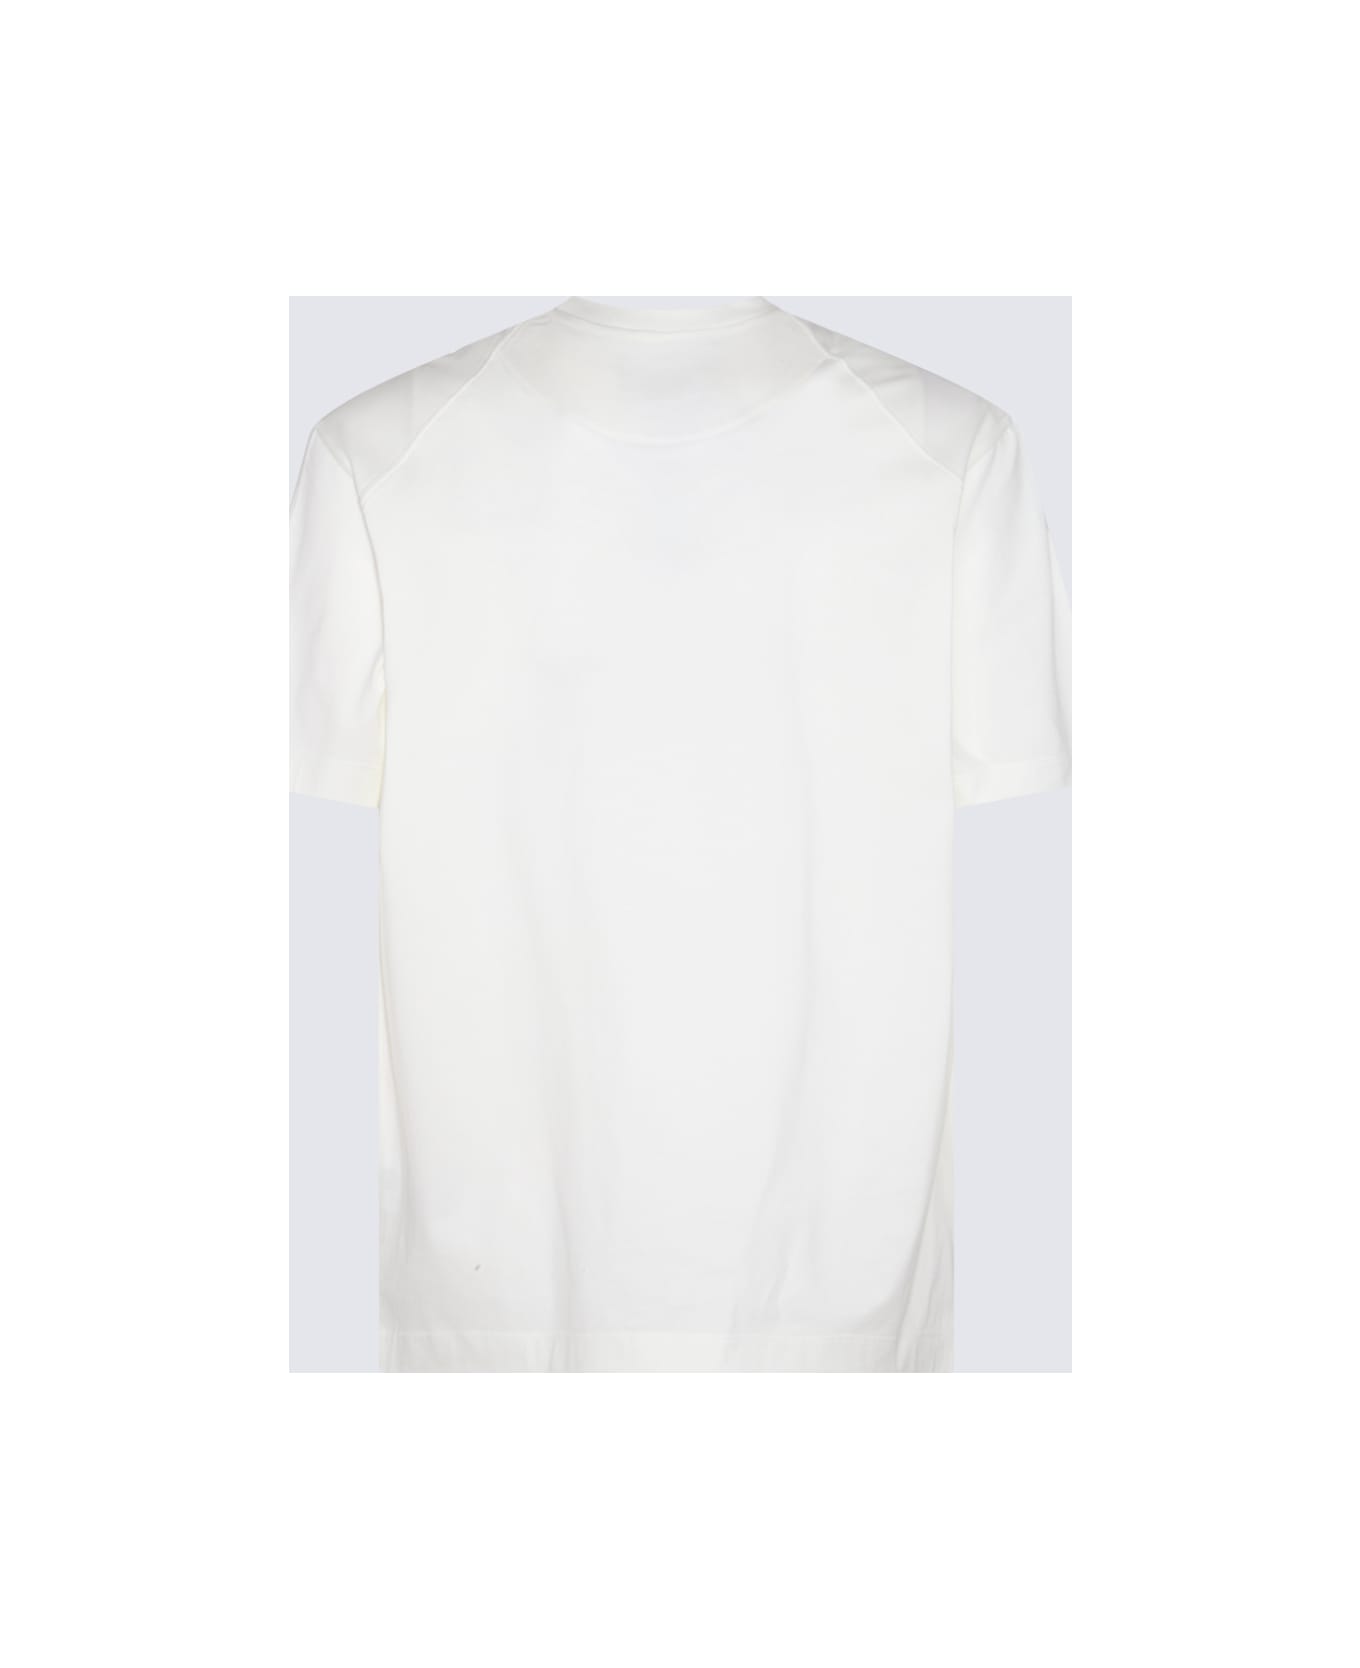 Y-3 White Cotton T-shirt - Beige